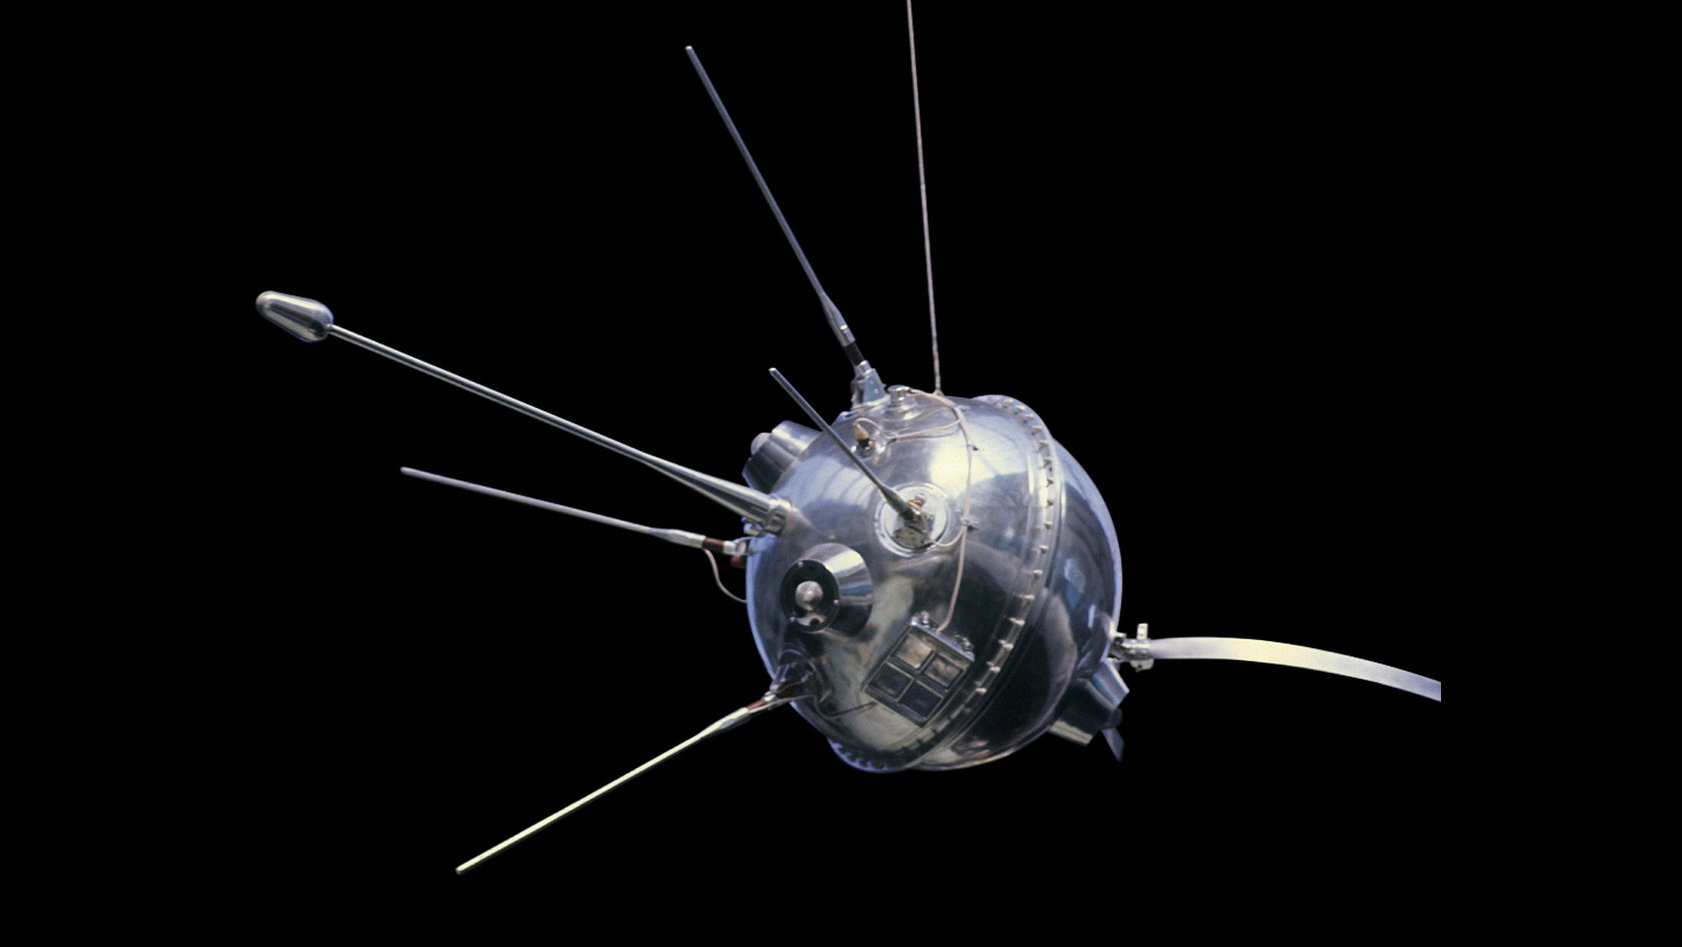 Луна 2 000. Луна-1 автоматическая межпланетная станция. Советская автоматическая межпланетная станция «Луна-1». Луна-2 автоматическая межпланетная станция. Луна 2 1959.